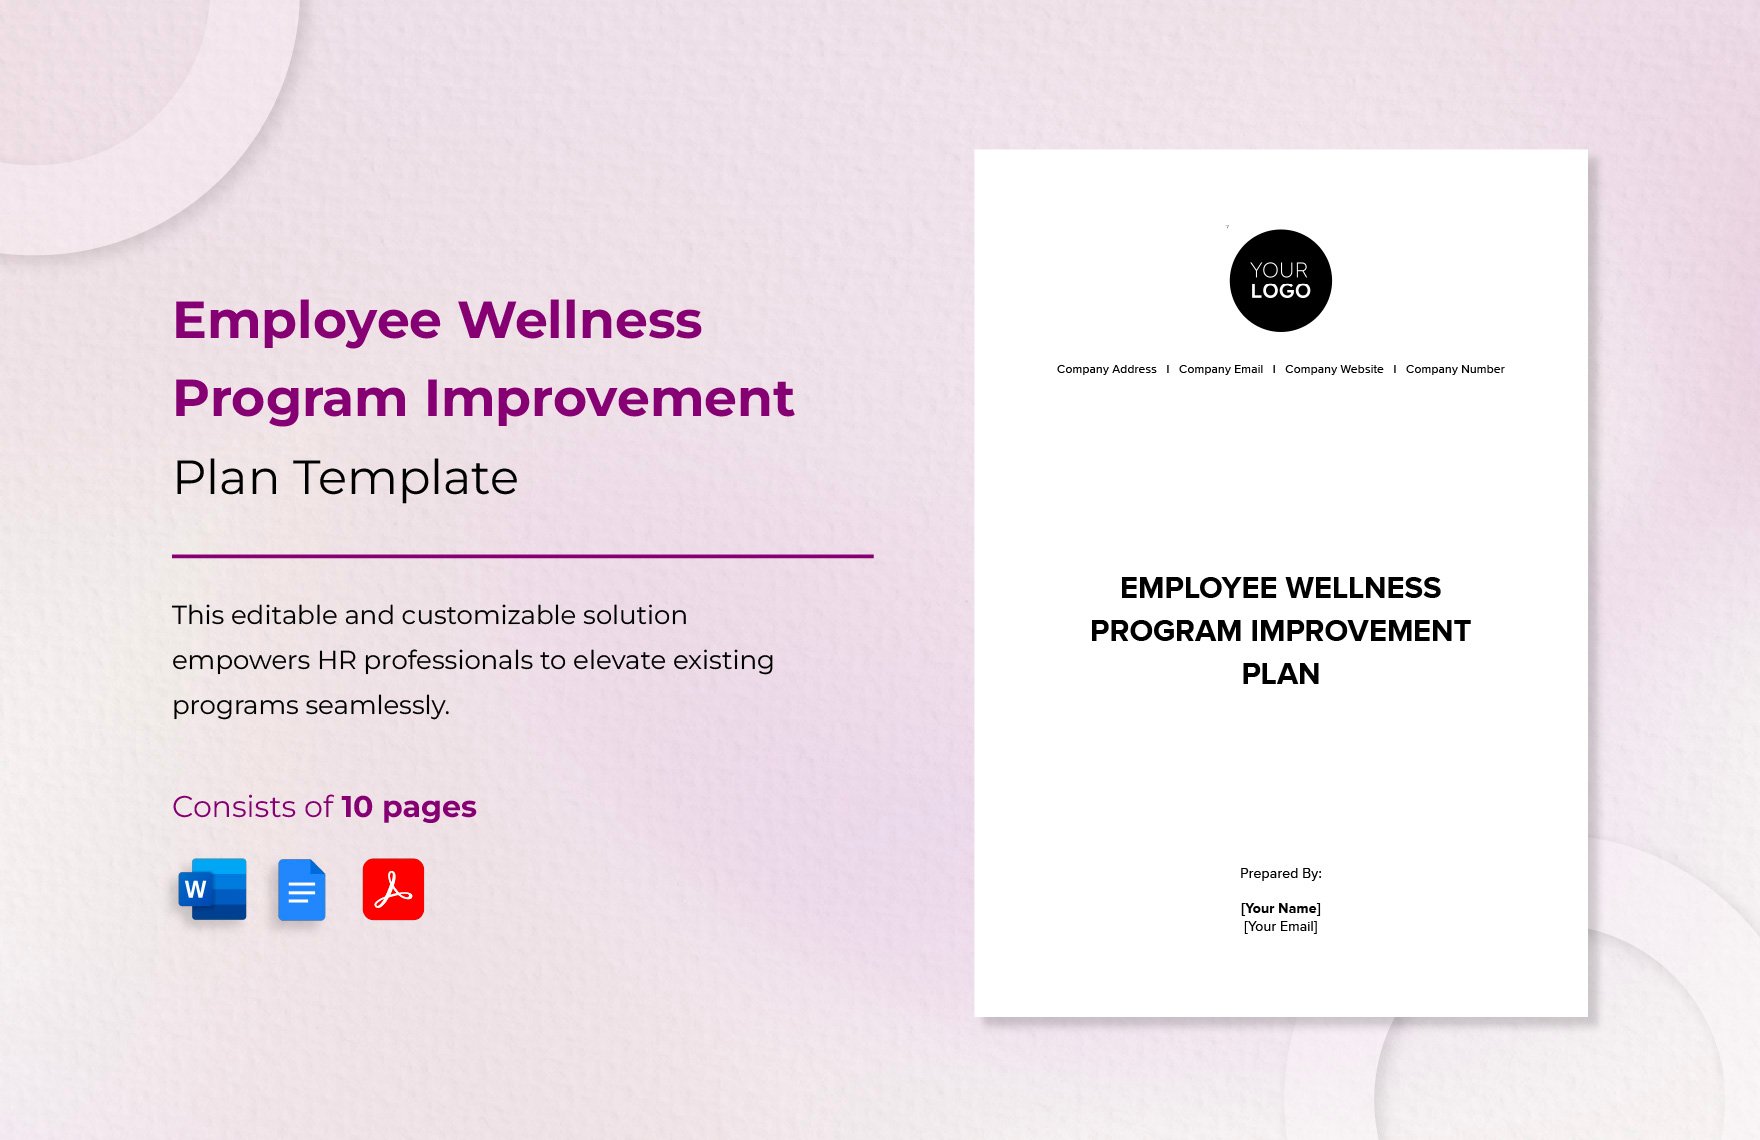 Employee Wellness Program Improvement Plan Template